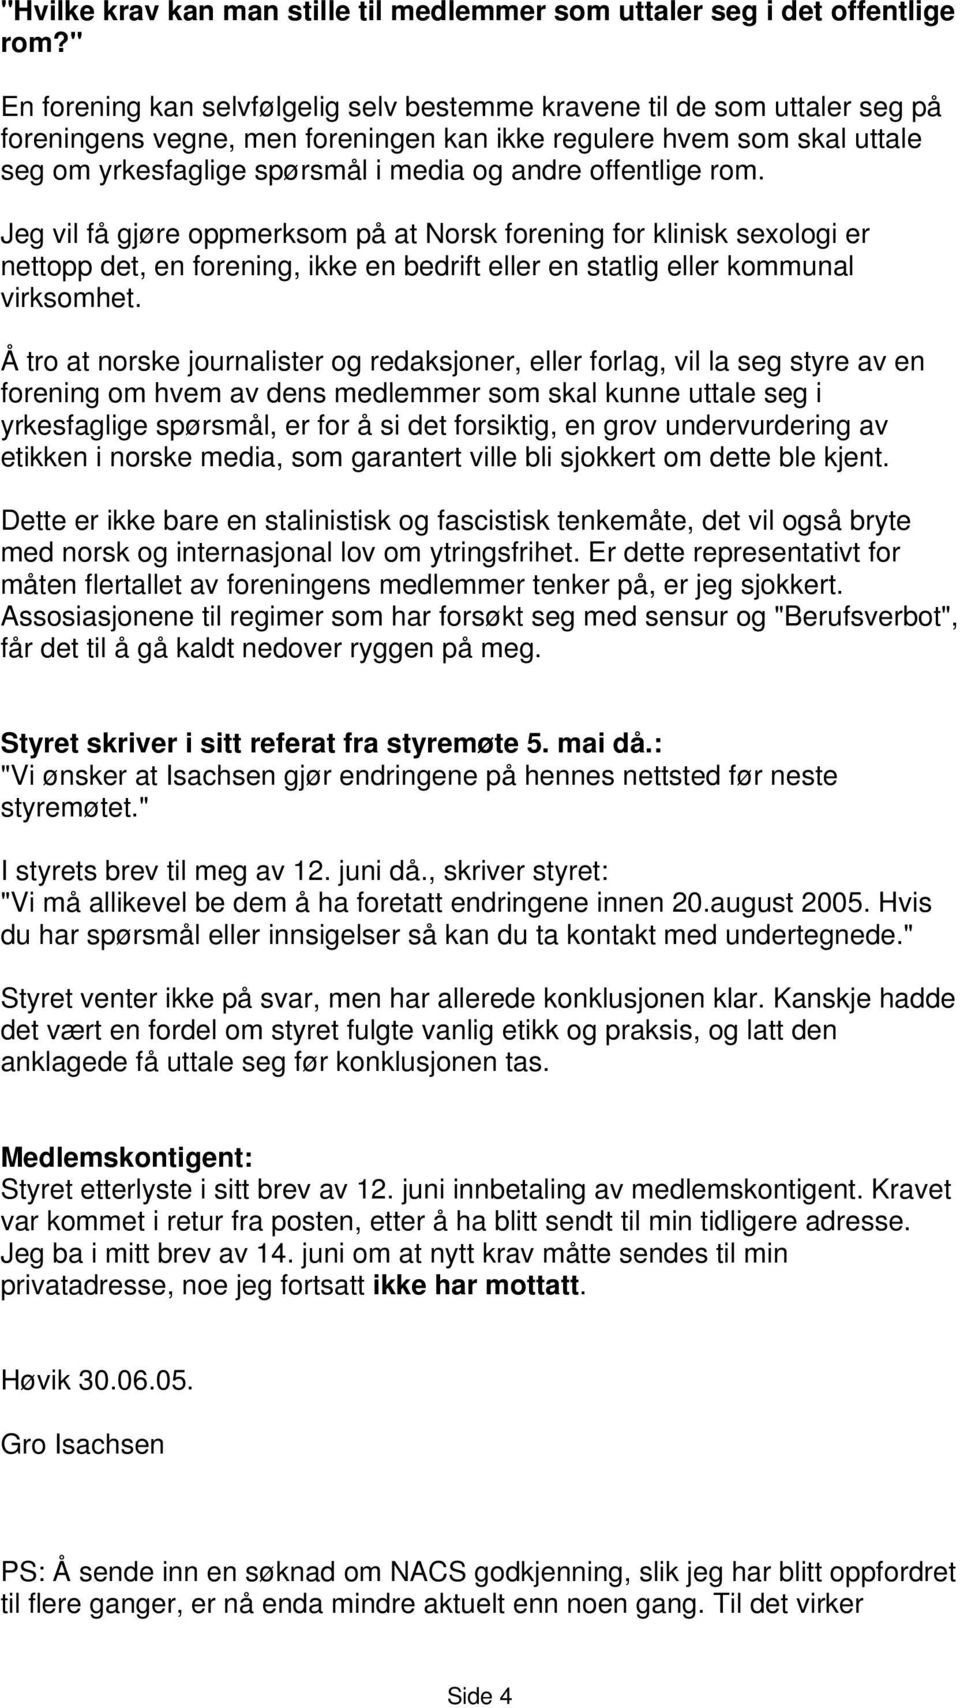 offentlige rom. Jeg vil få gjøre oppmerksom på at Norsk forening for klinisk sexologi er nettopp det, en forening, ikke en bedrift eller en statlig eller kommunal virksomhet.